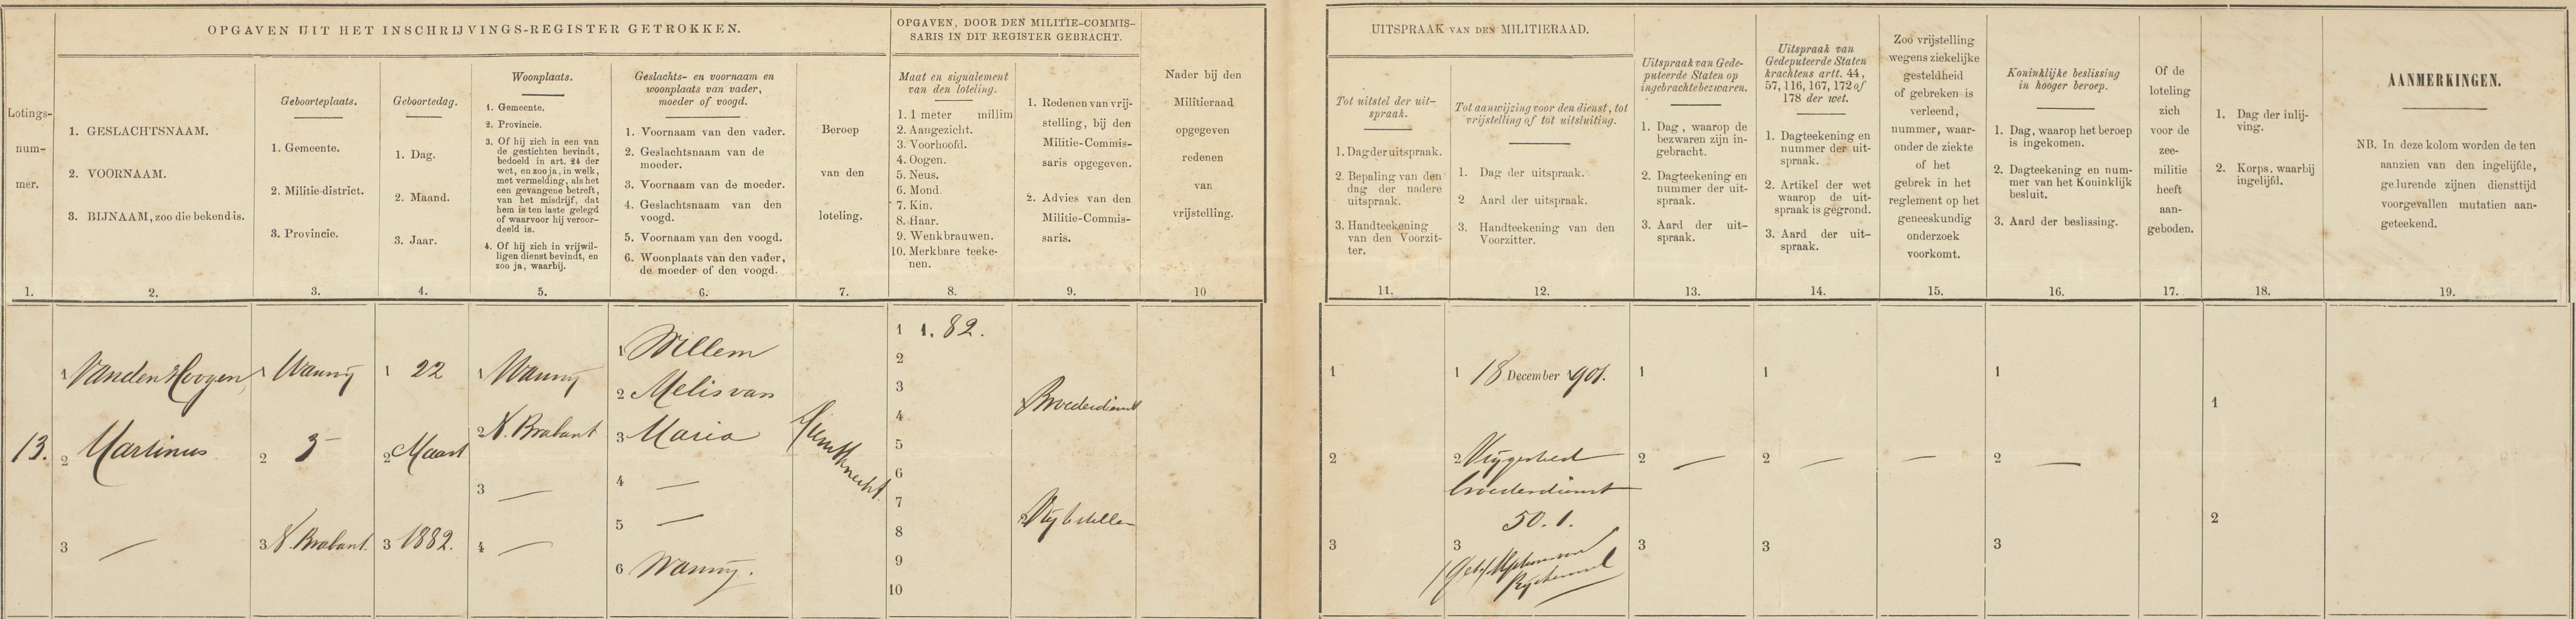 Lotingsregisters van de Nationale Militie, lichtingsjaren, 1902 Martinus van den Hoogen